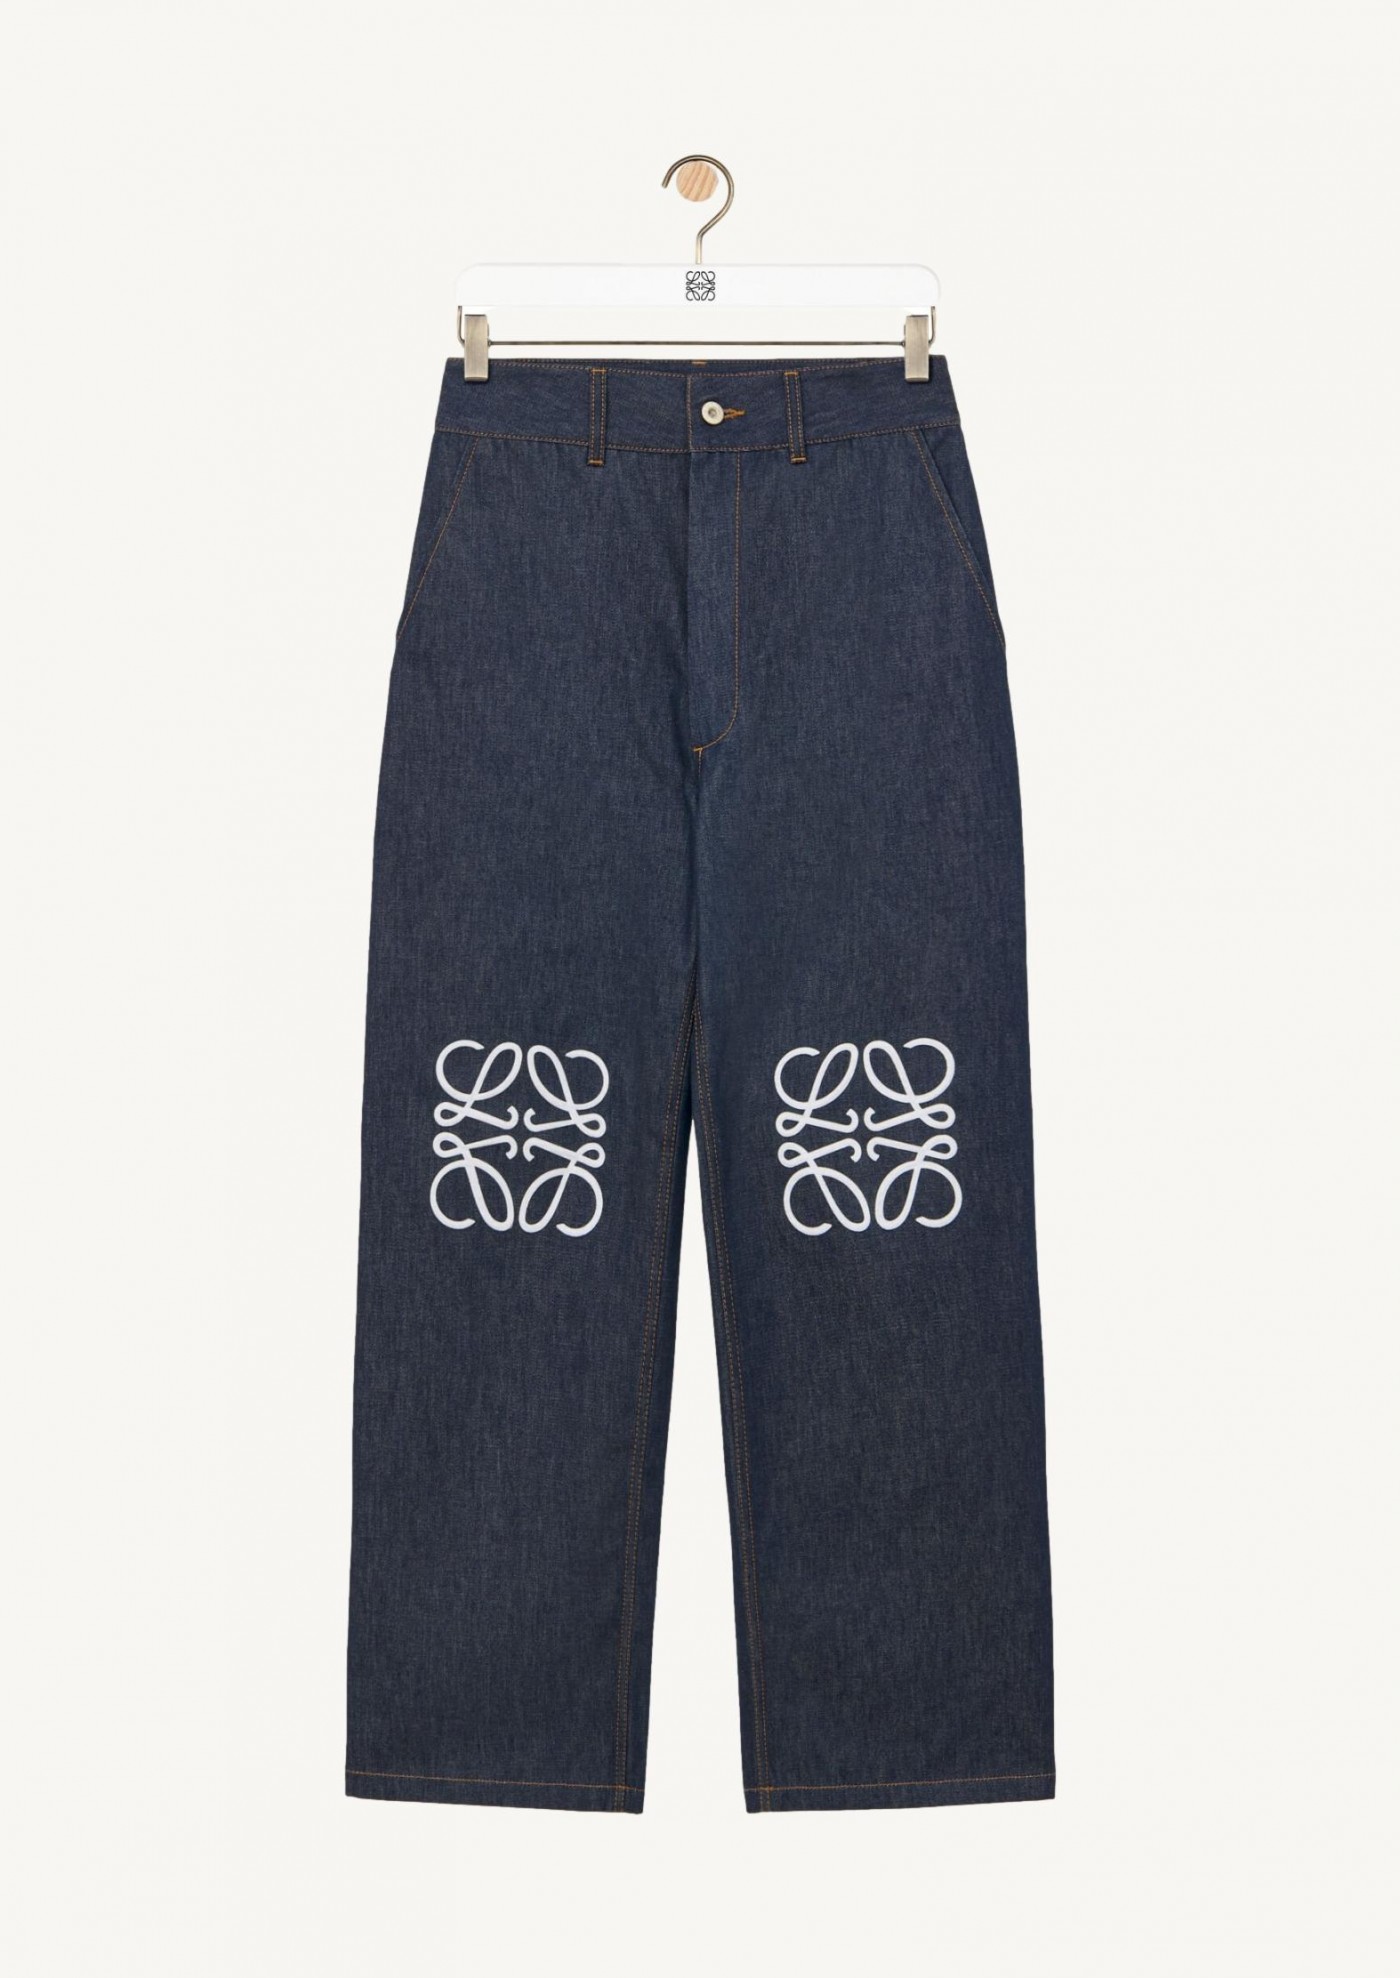 Anagram baggy jeans in denim - Loewe